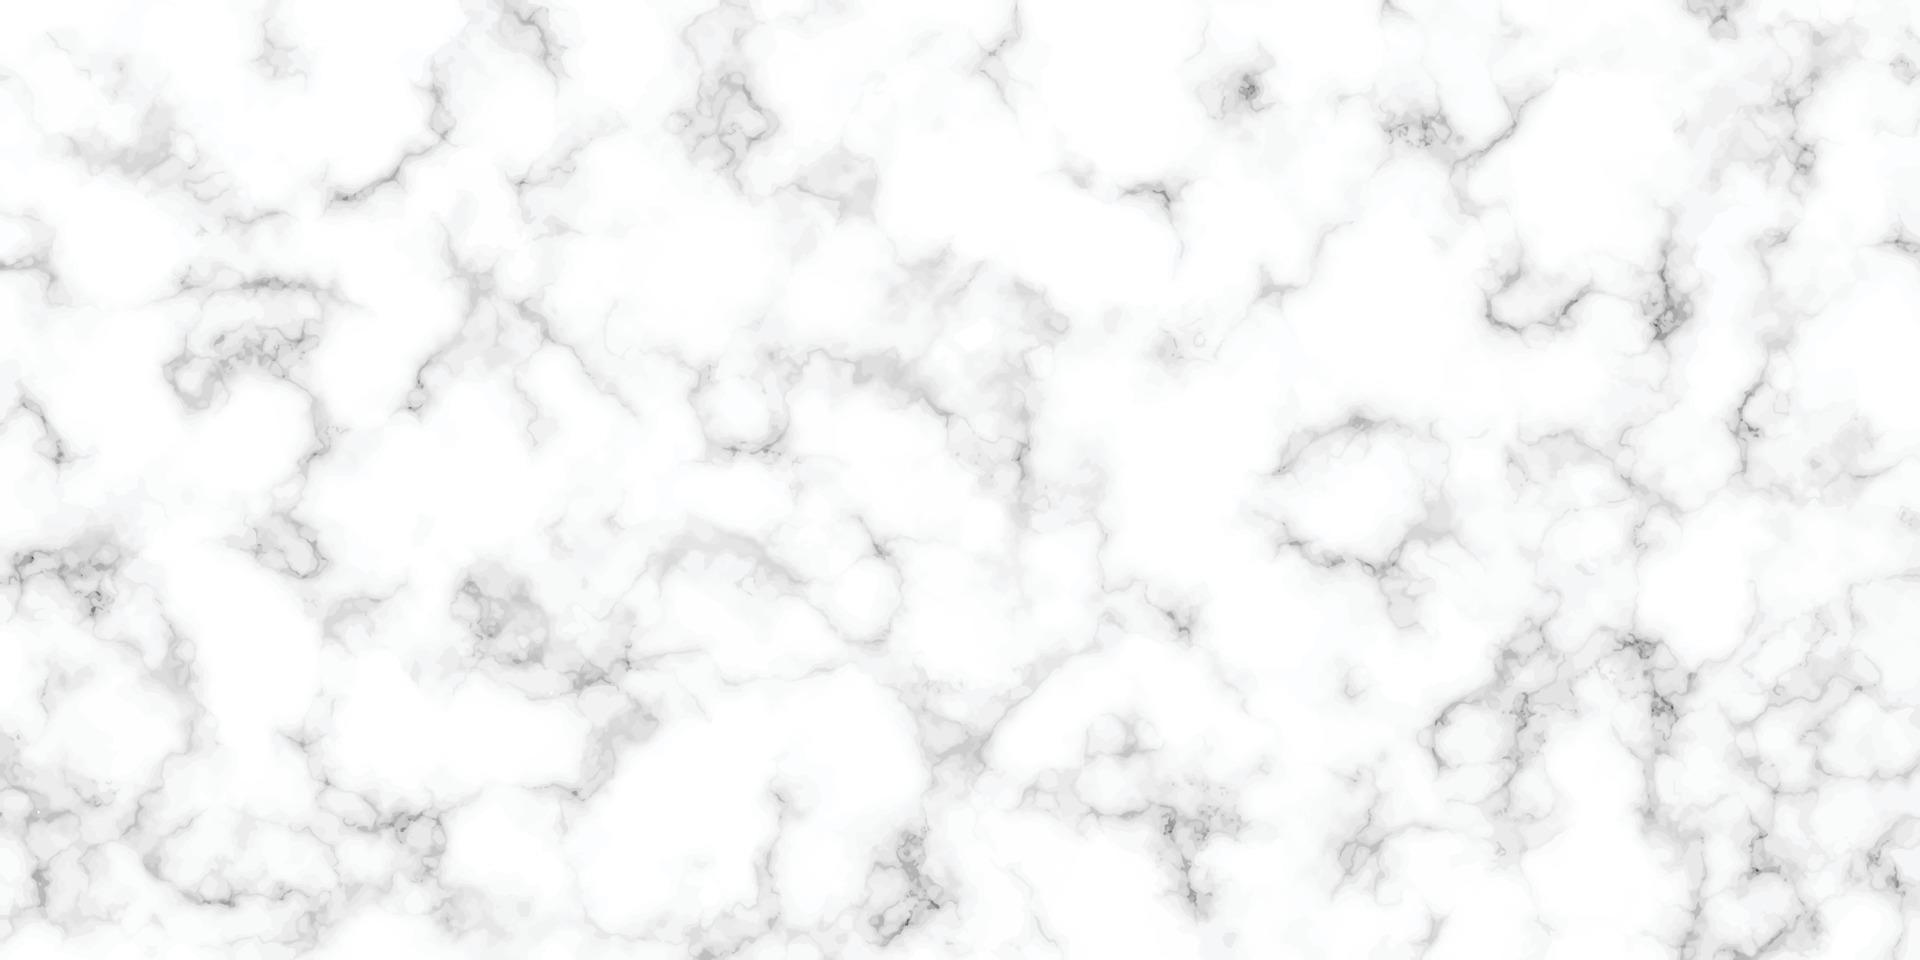 abstrakte weiße marmor gestreifte musteroberfläche hintergrundtextur, schwarze und weiße marmortextur. abstrakter breiter Panoramahintergrund, Wand- und Boden- oder Möbeldekoration, Vektor, Illustration vektor